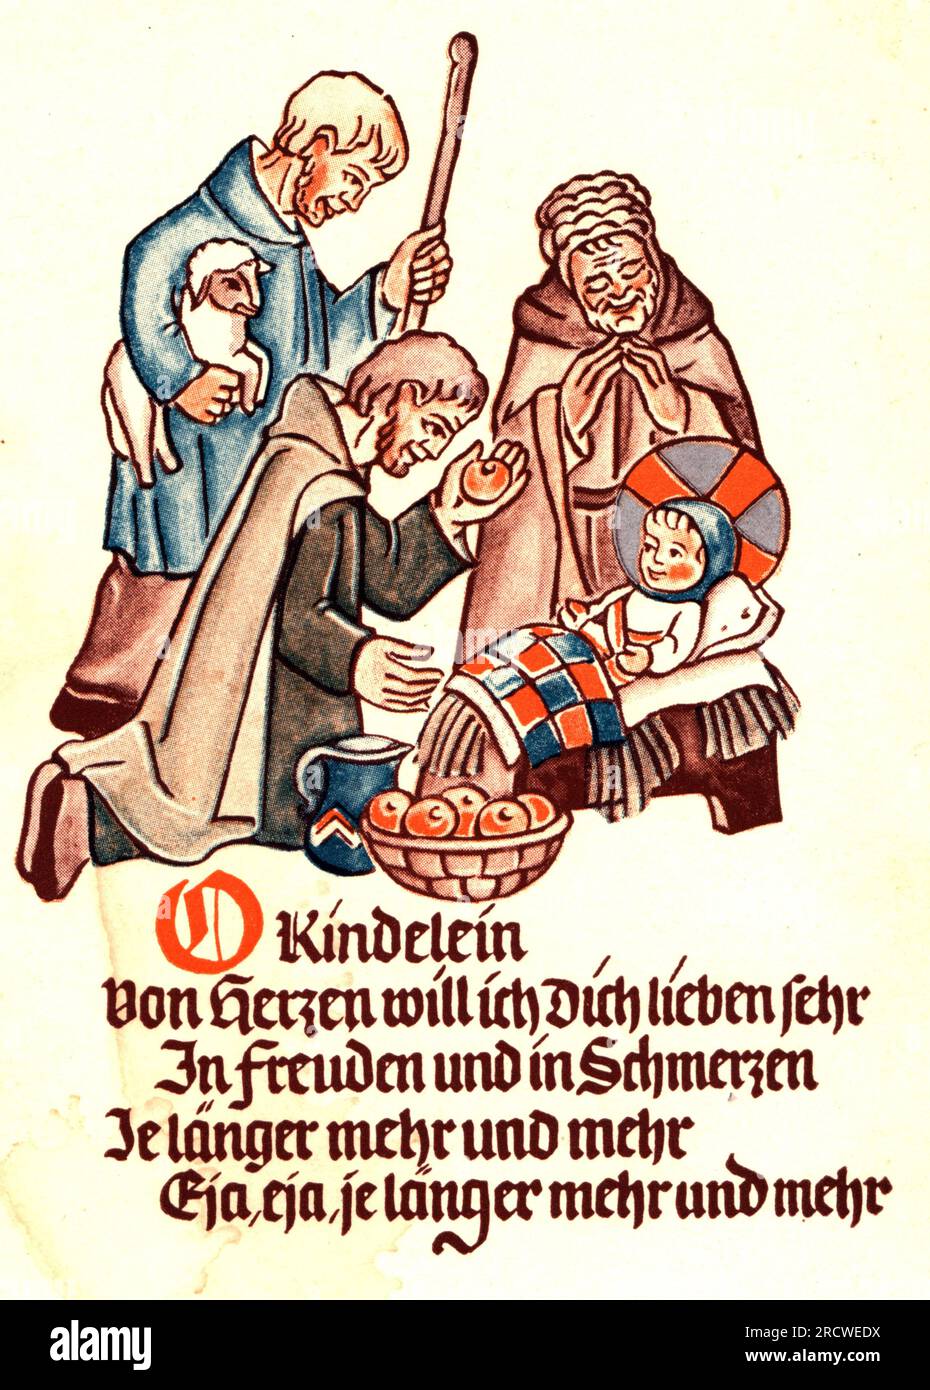 Weihnachten, Grußkarte, Adoration of the Shepherds, Farbdruck, von Cl. SCHMIDT, ZUSÄTZLICHE-RECHTE-FREIGABE-INFO-NICHT-VERFÜGBAR Stockfoto